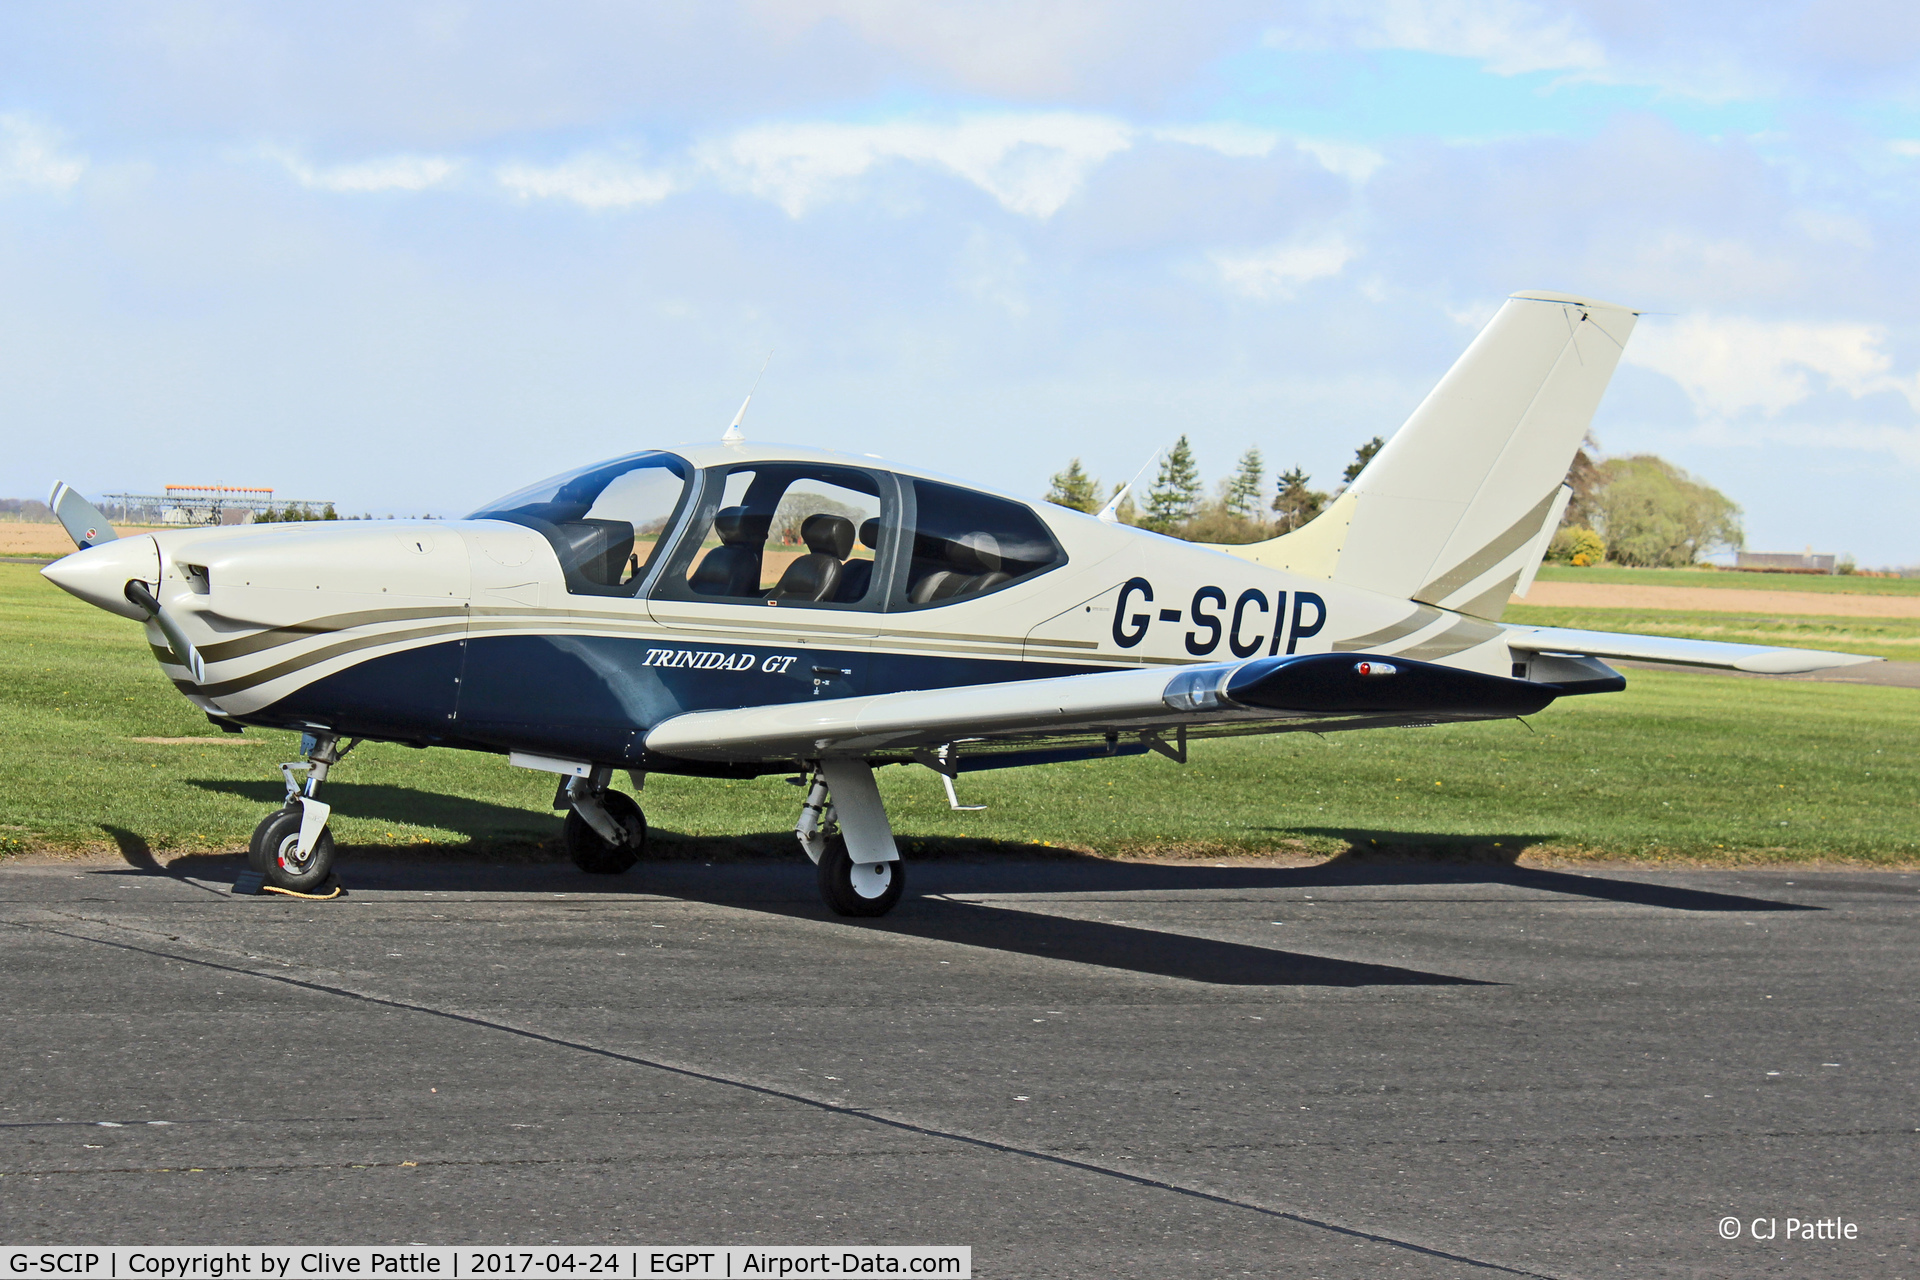 G-SCIP, 2000 Socata TB-20 Trinidad C/N 2014, Parked up at Perth